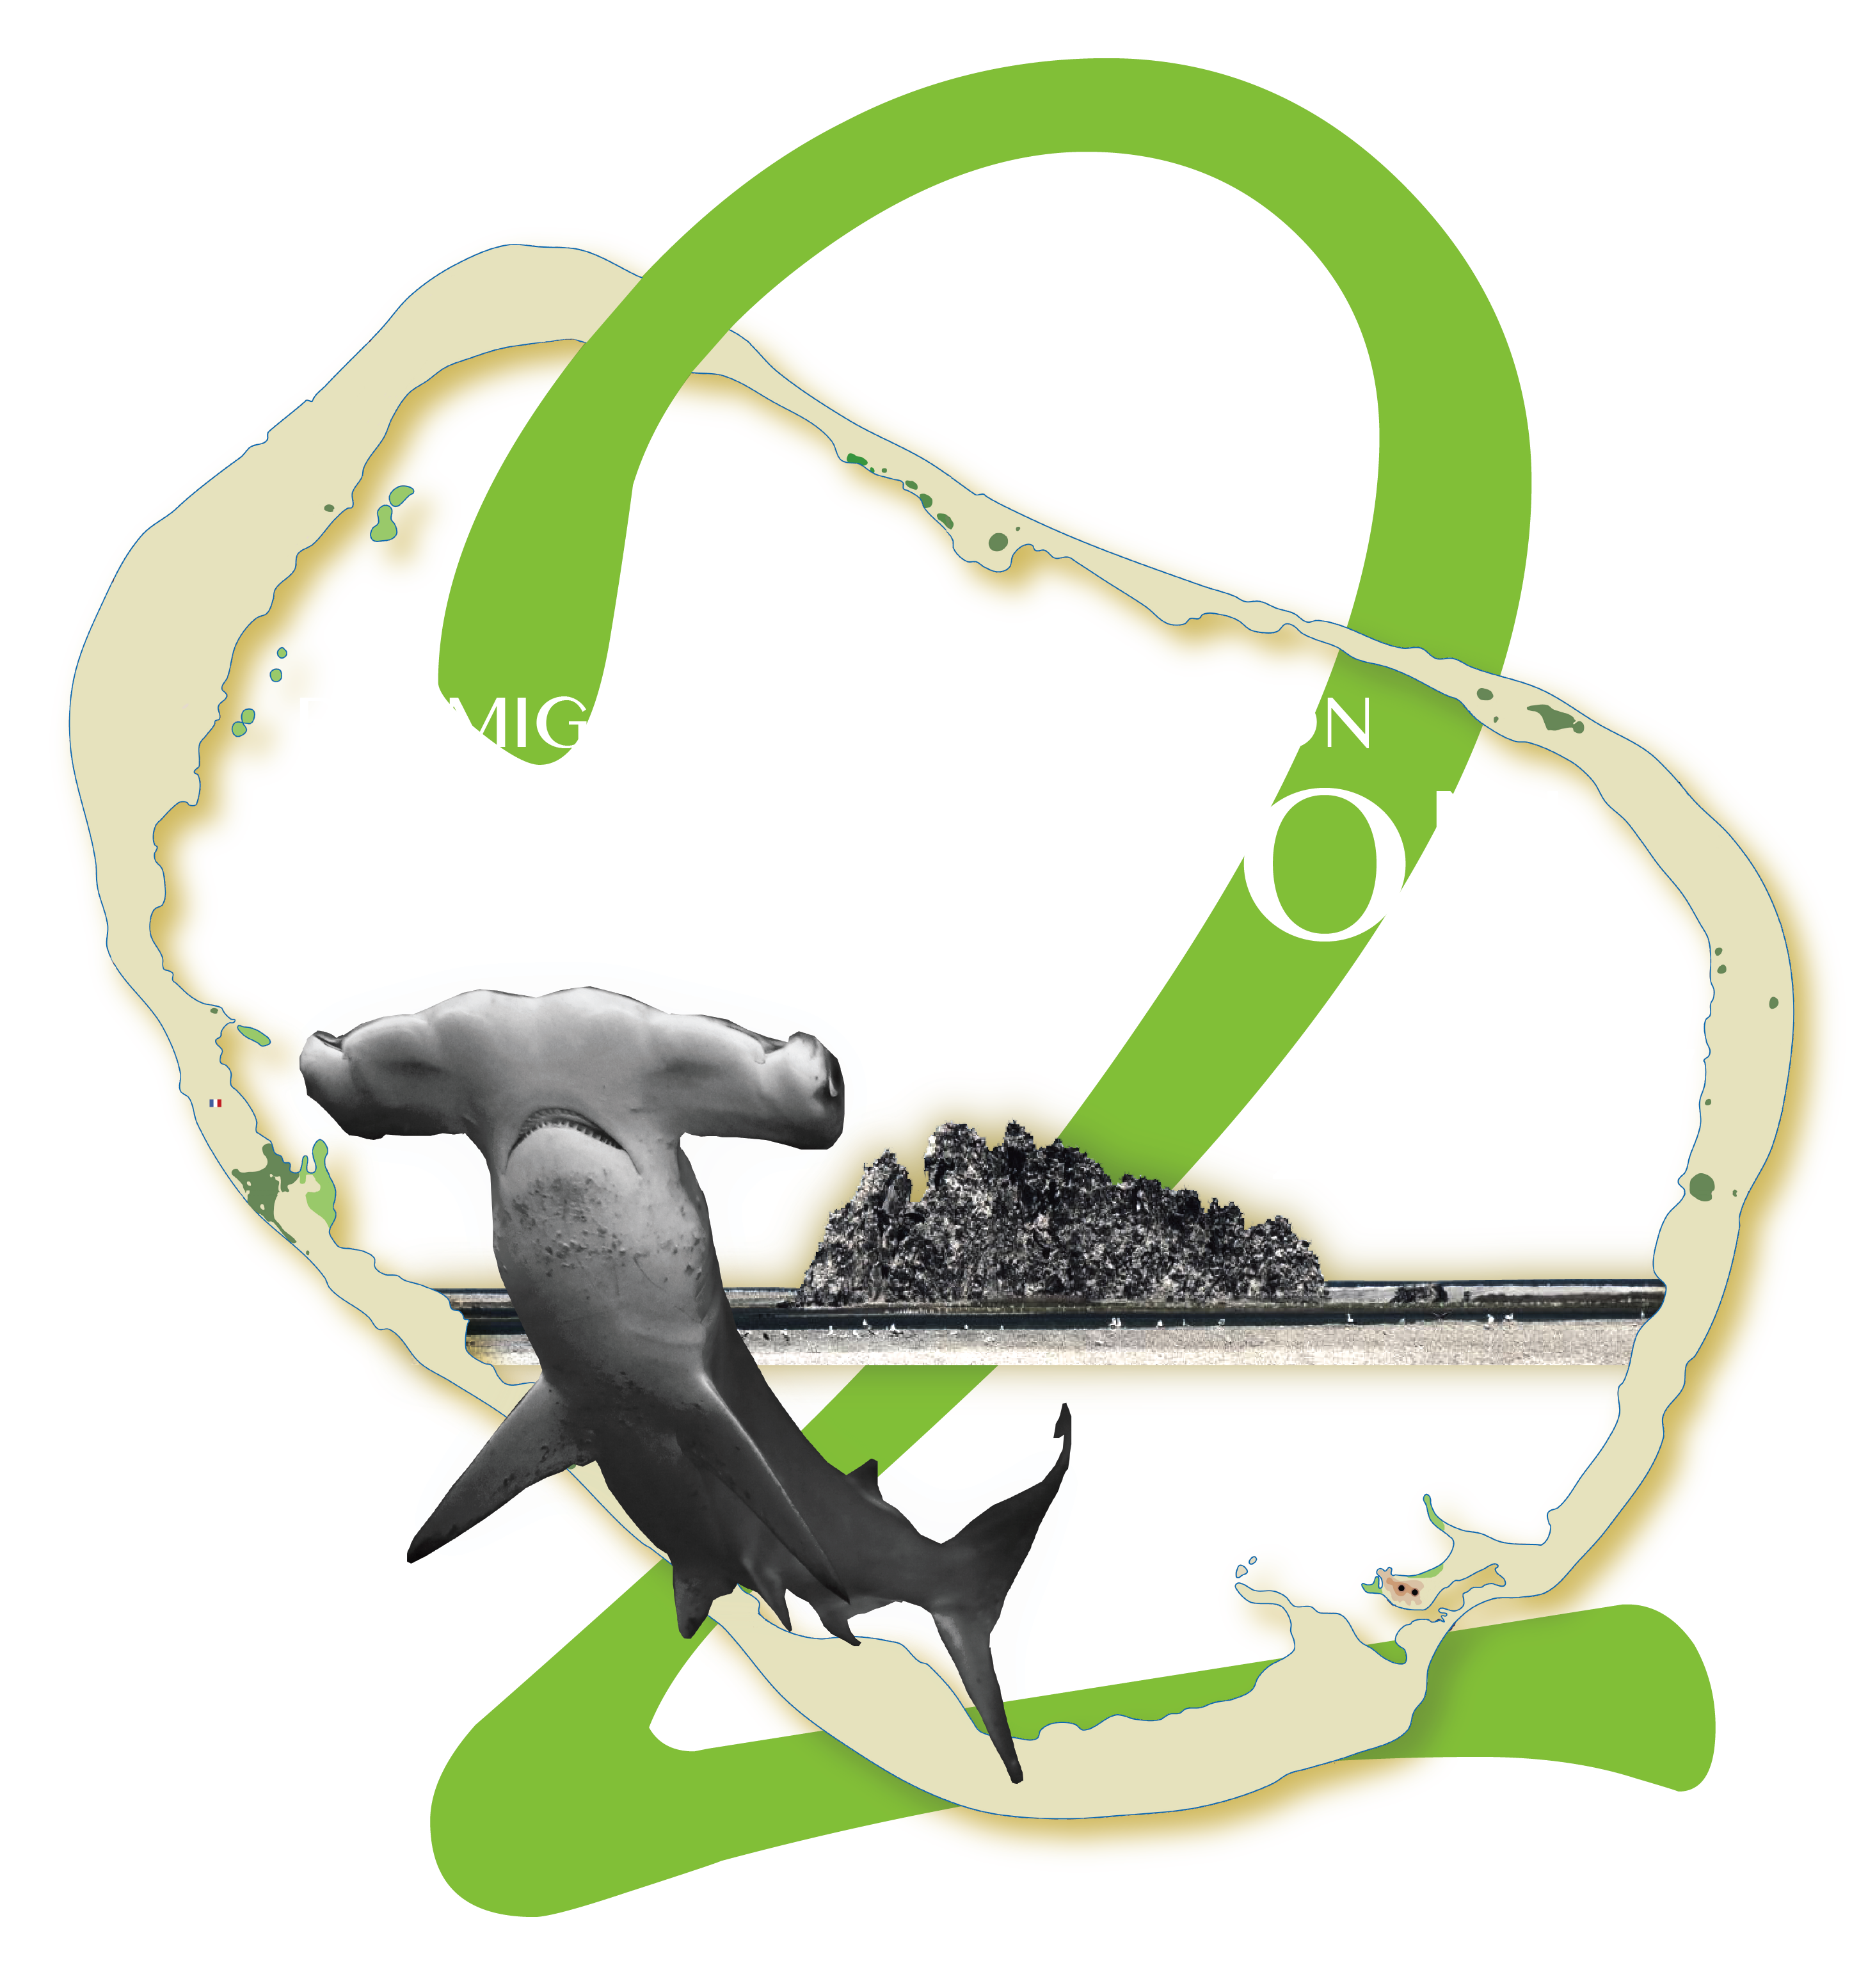 clipperton-expedition-2017-logo